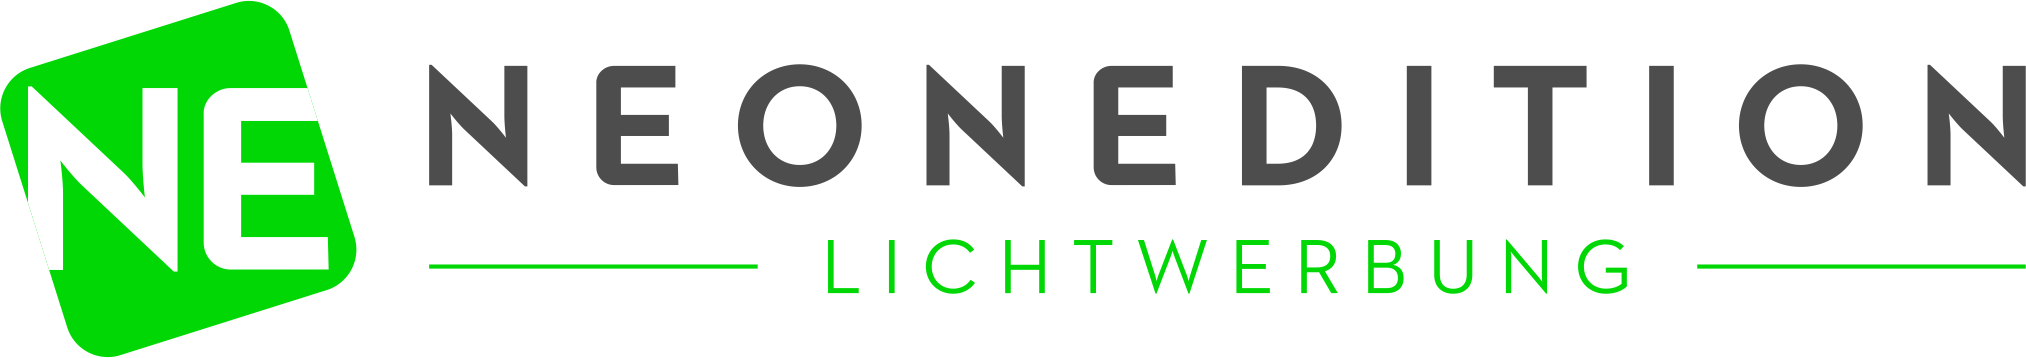 Neonedition Lichtwerbung GmbH